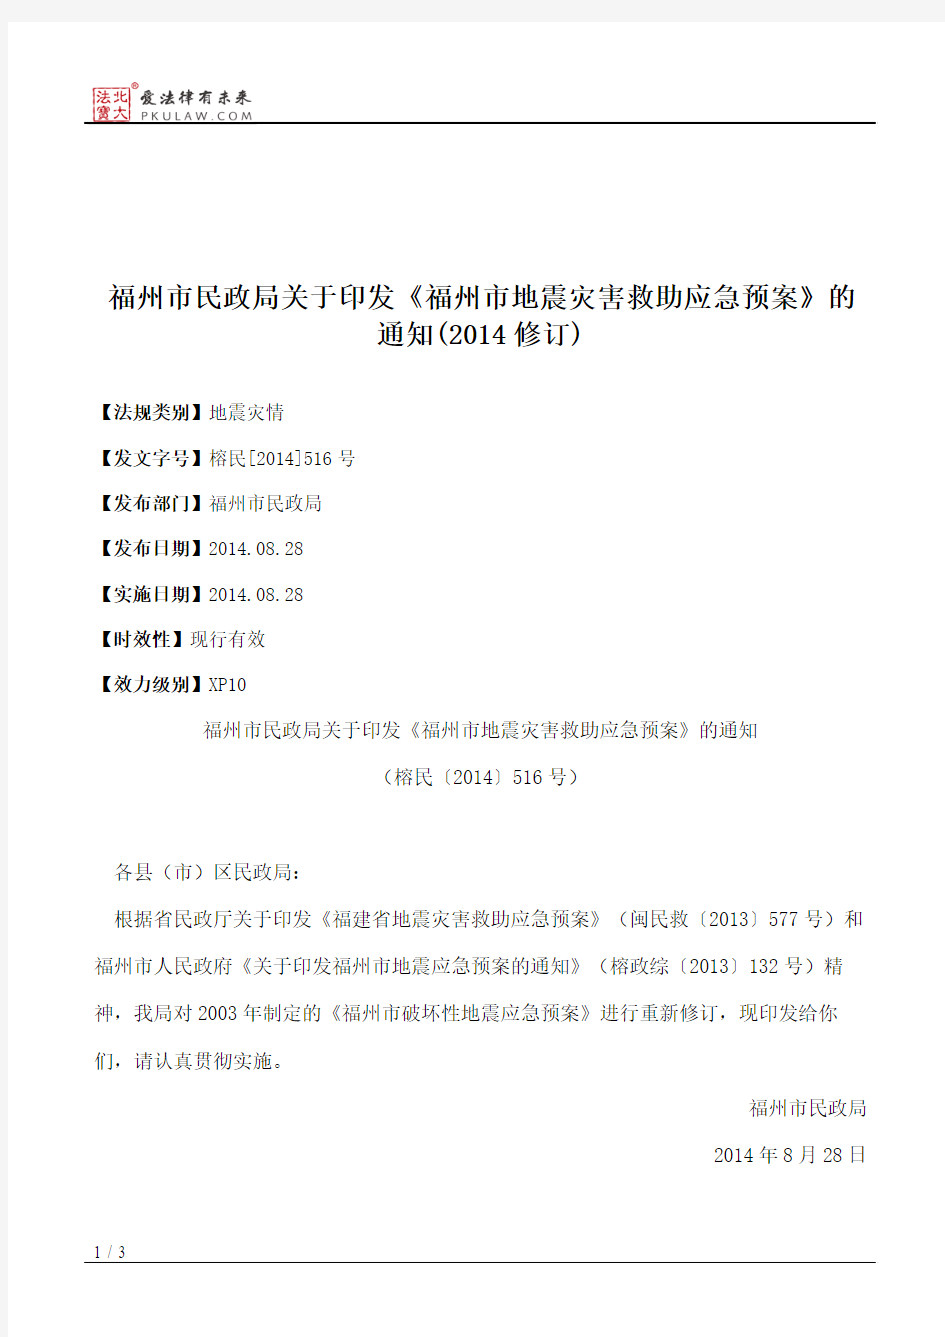 福州市民政局关于印发《福州市地震灾害救助应急预案》的通知(2014修订)